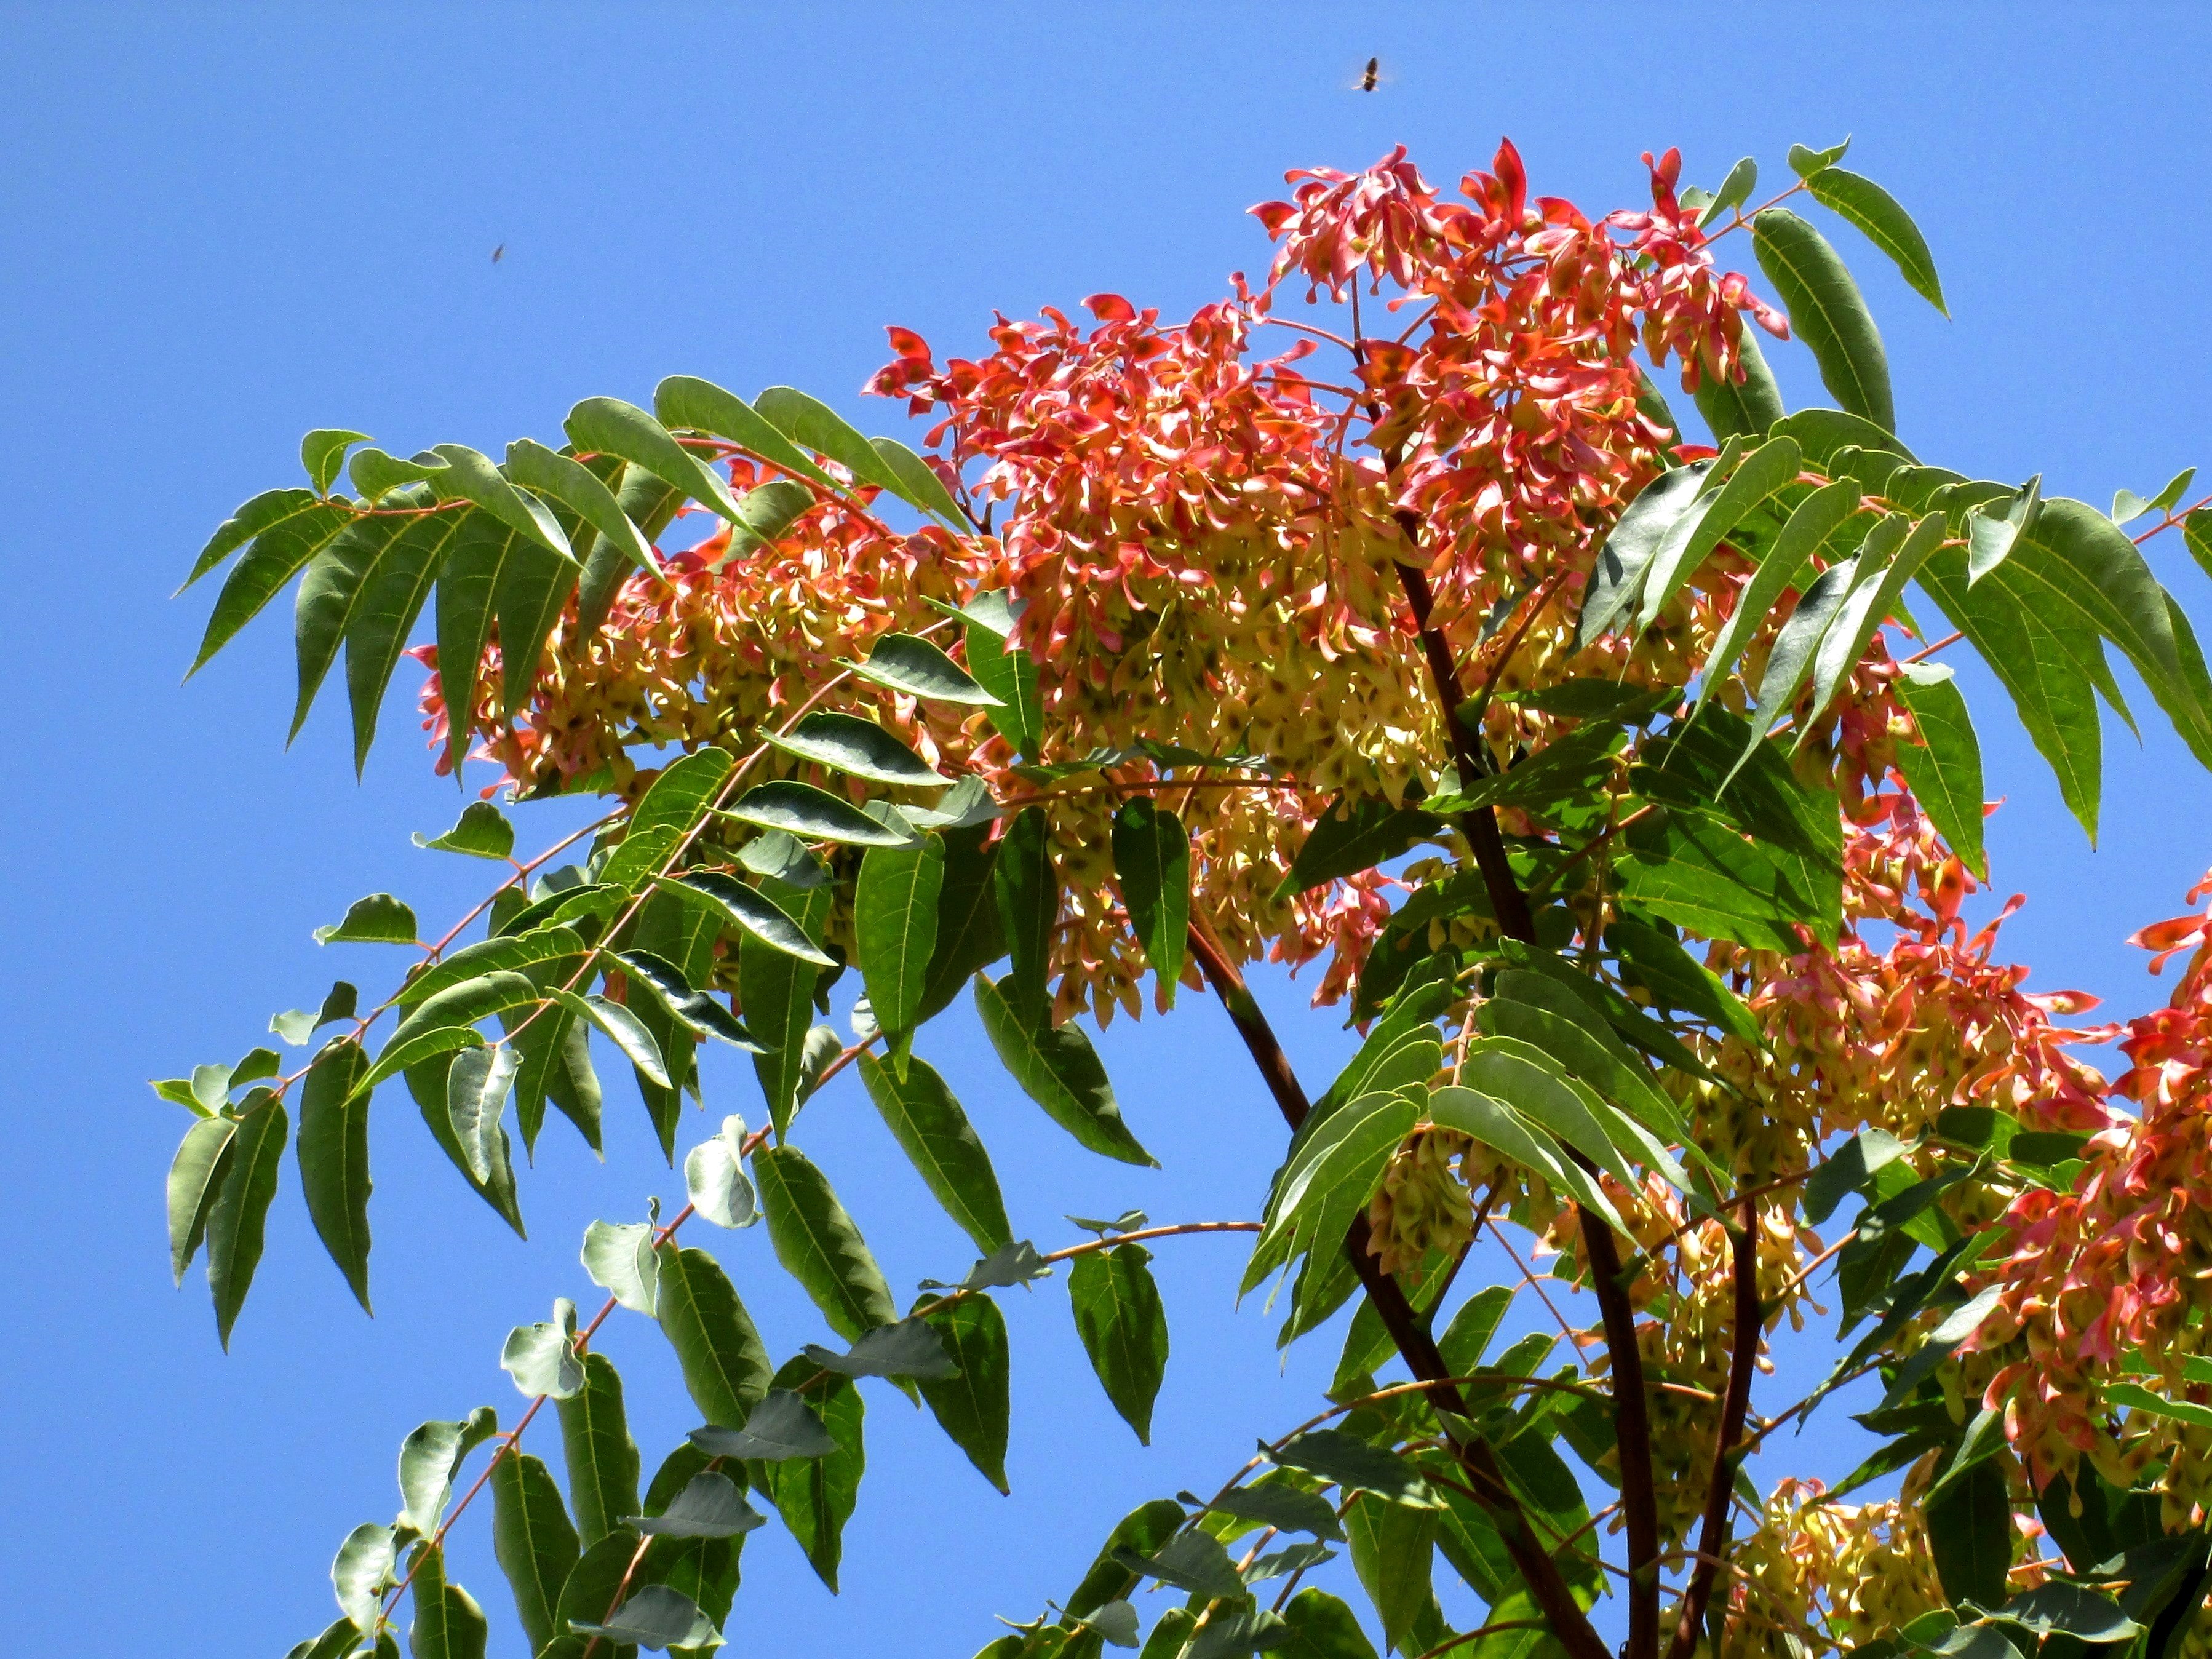 Айлант высочайший. Айлант китайский ясень. Айлант дерево. Айлант высочайший китайский ясень. Айлант высочайший, китайский ясень (Ailanthus altissima).